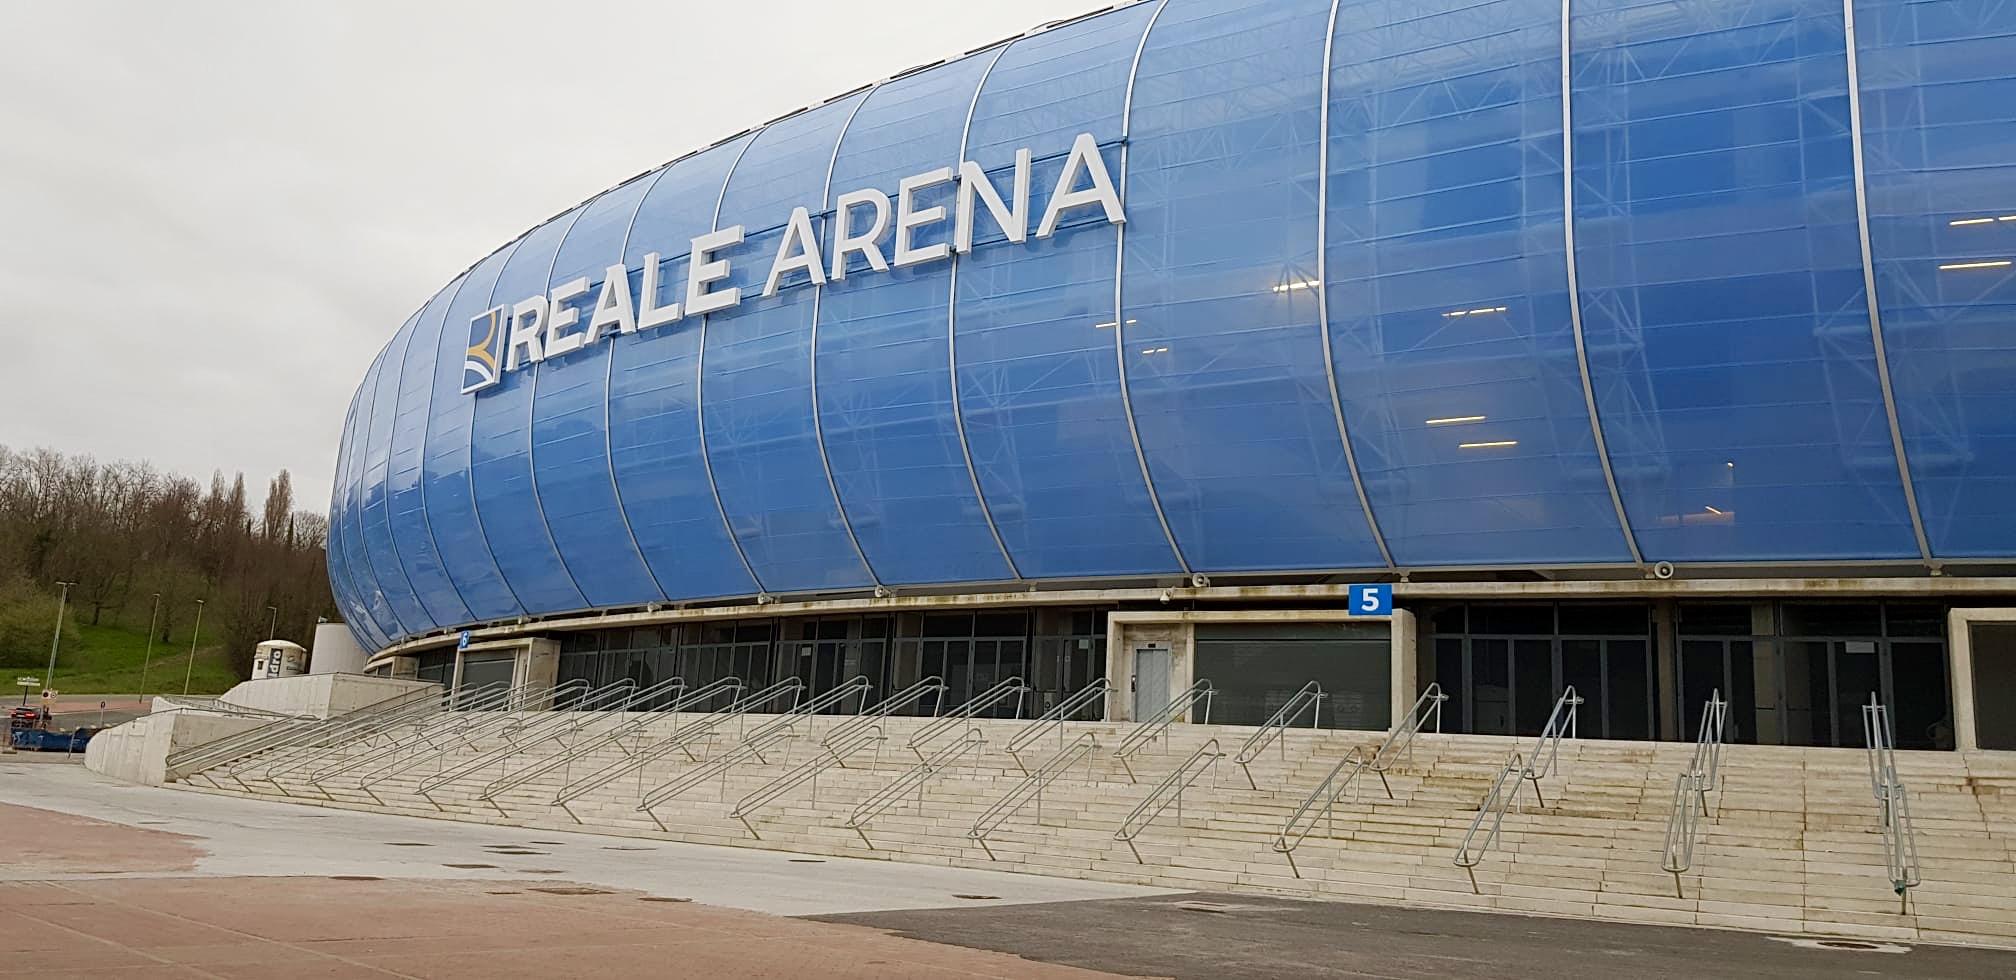 reale arena exterior - Compra Online con Ofertas OFF52%